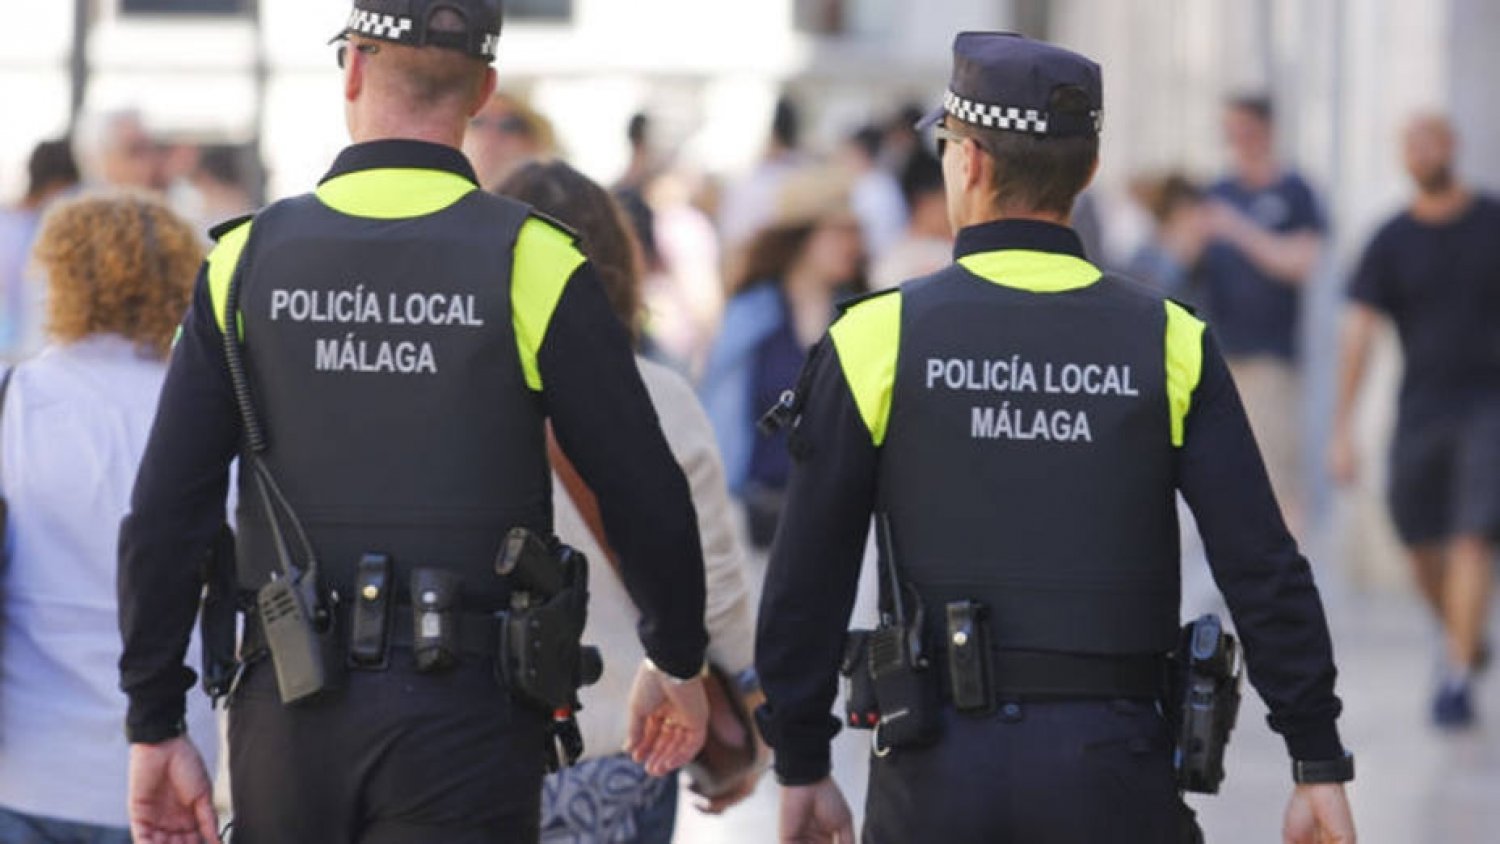 La Policía Local tramita 76 denuncias en materia de control de ruidos y convivencia en la última semana